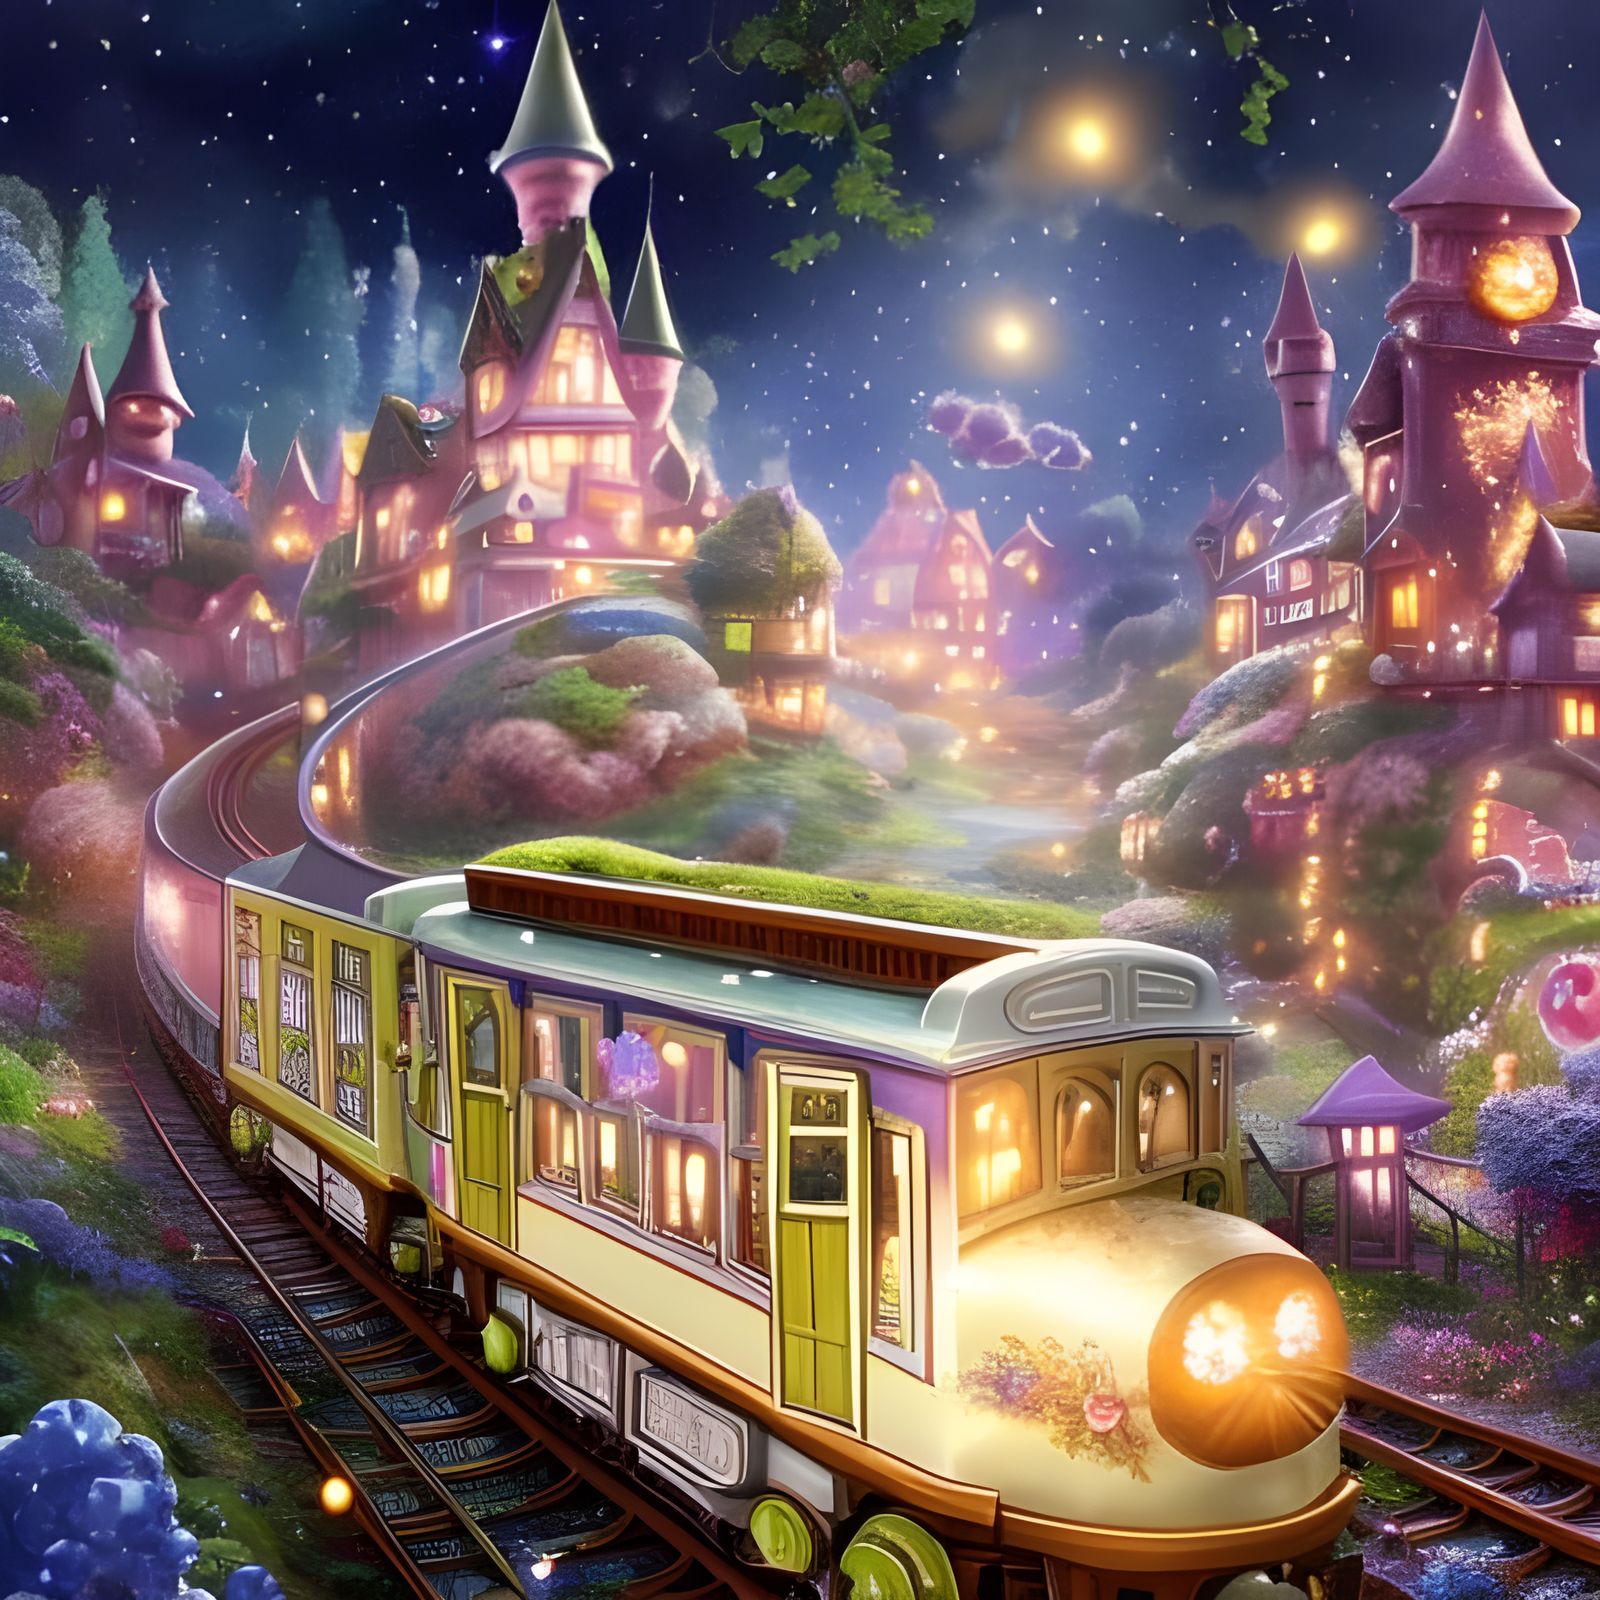 The Magic Train